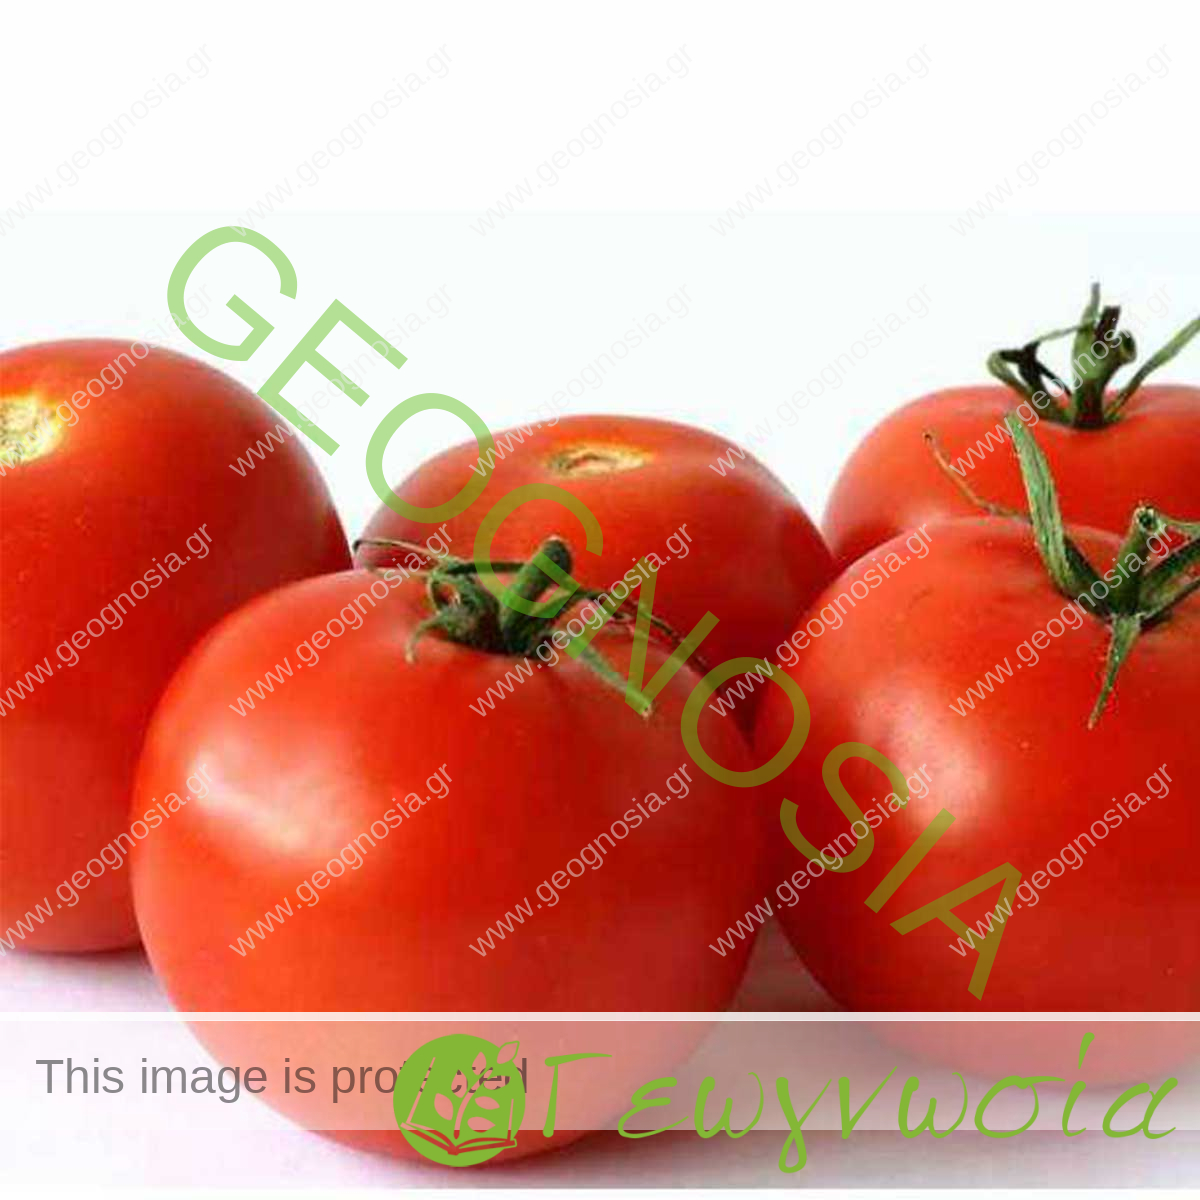 sporoi-tomatas-fiesta-f1-geoponiki